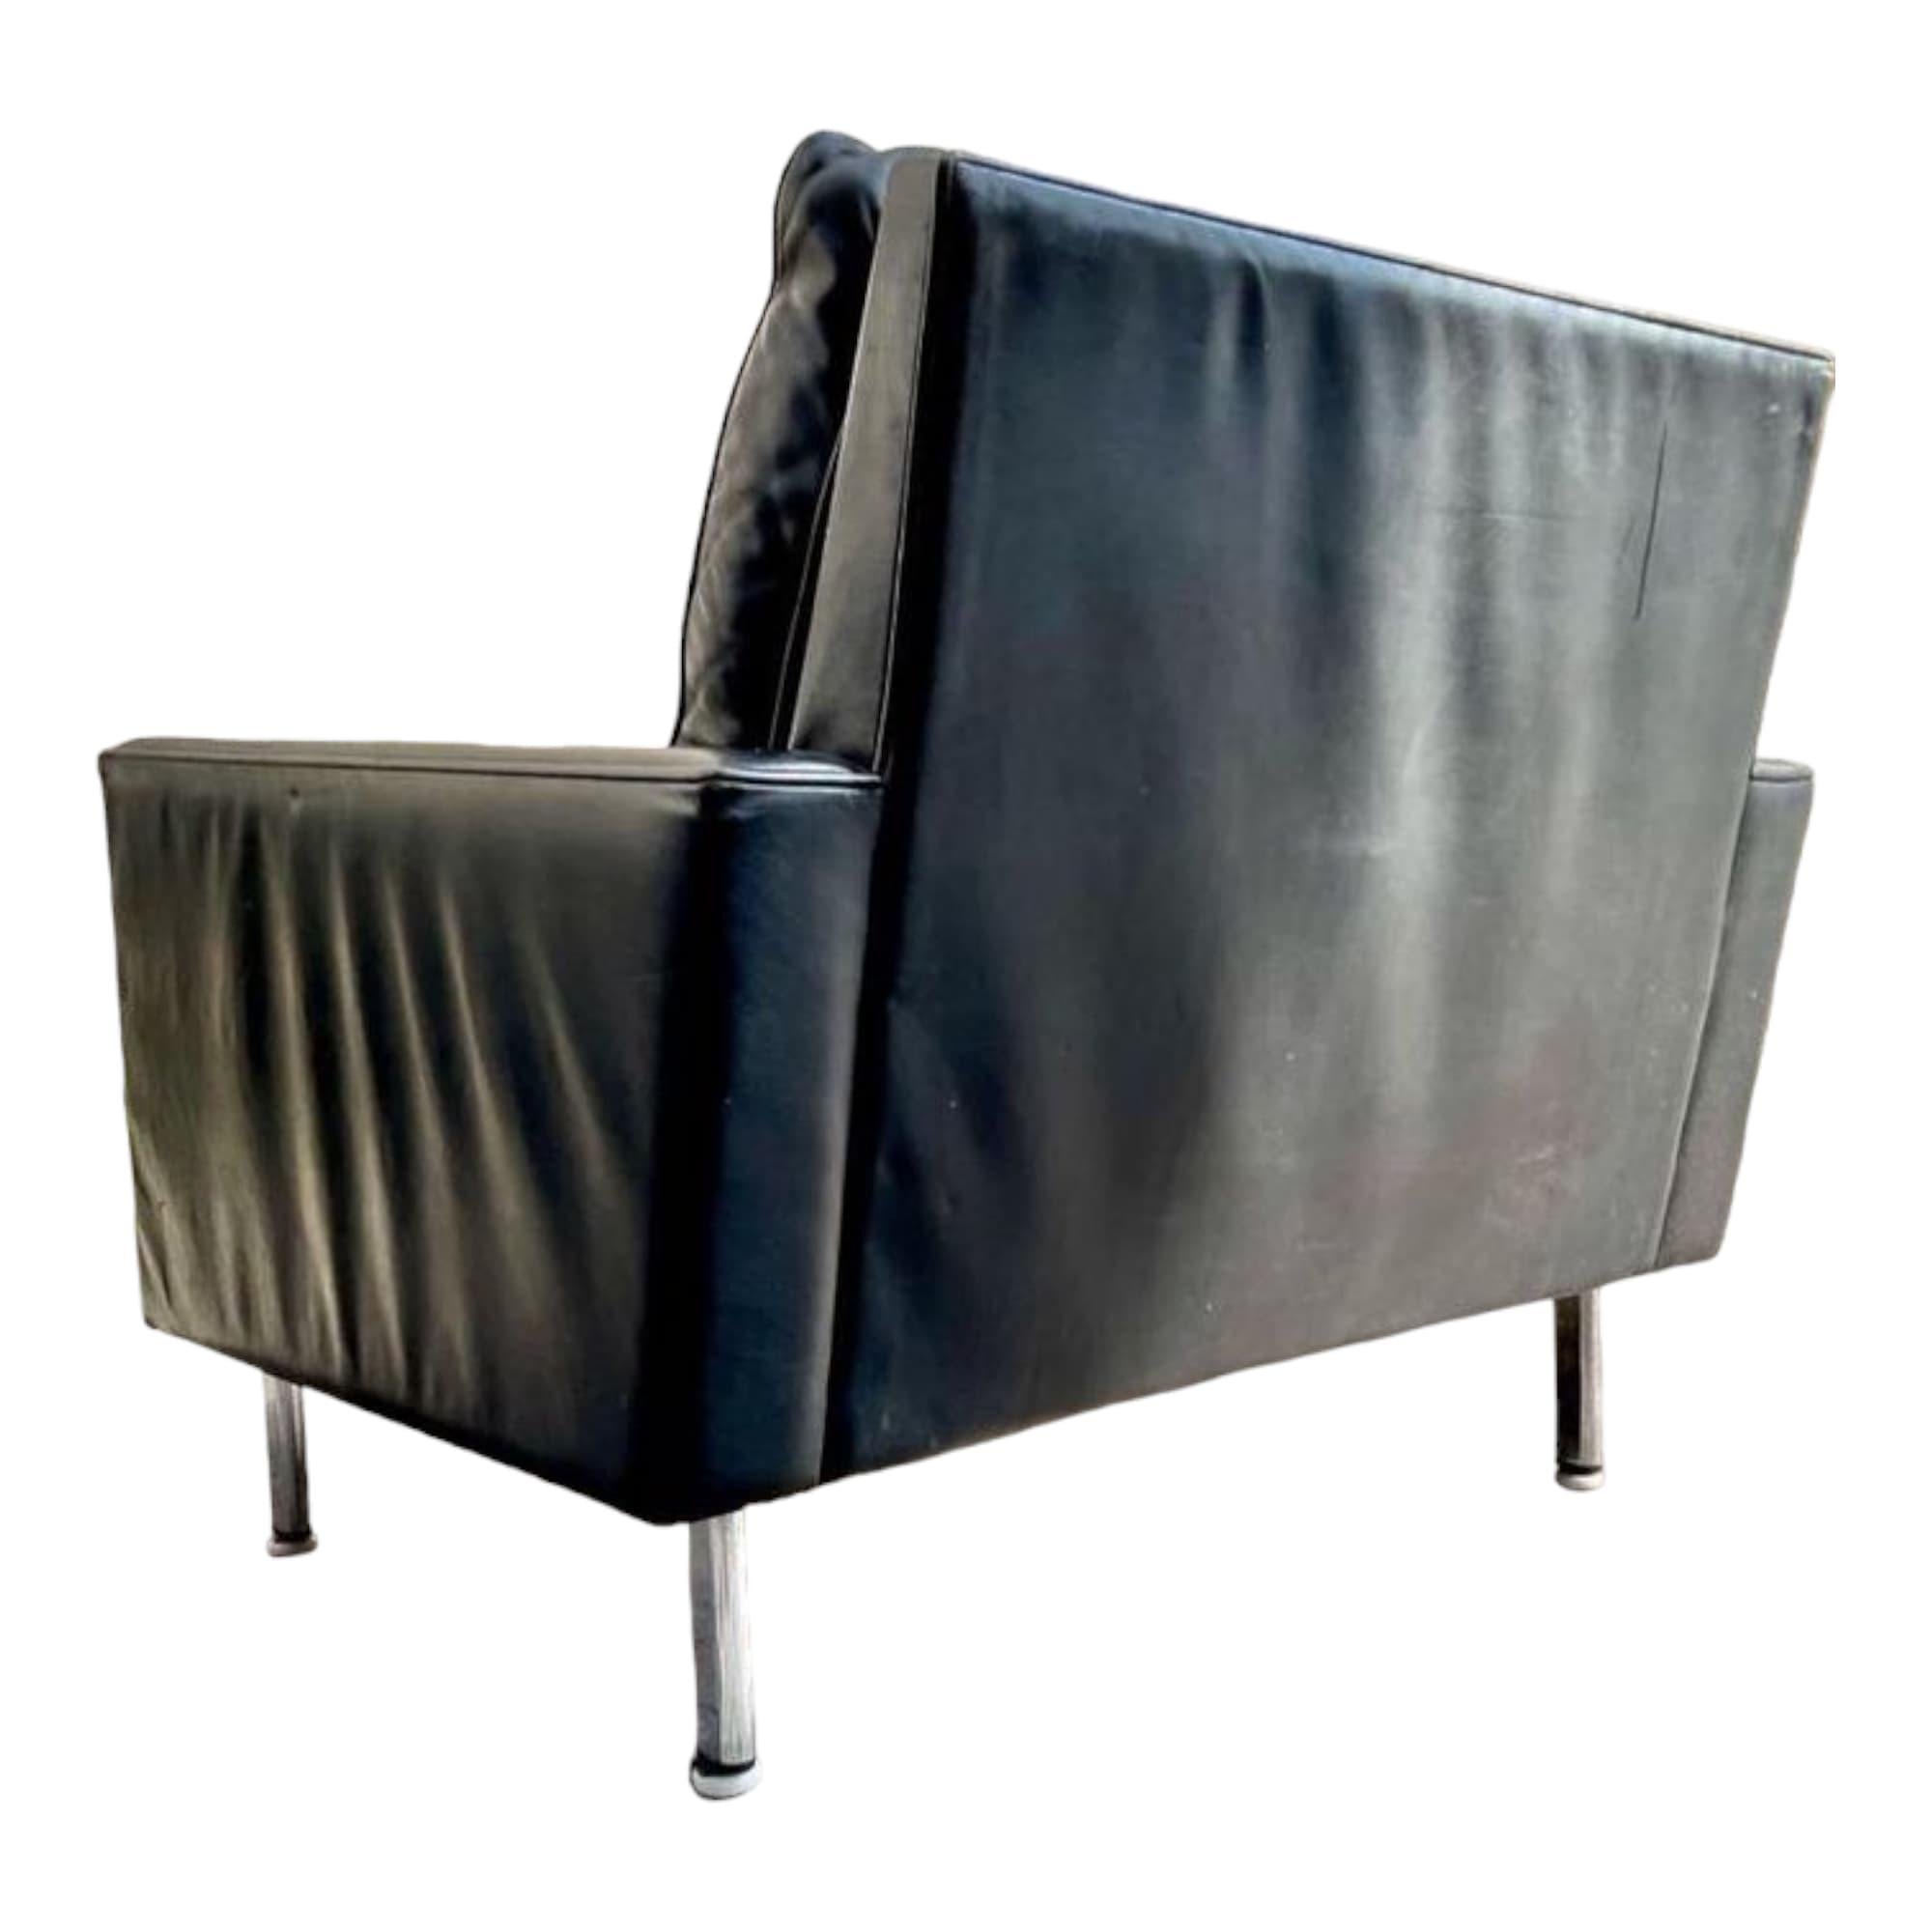 Ein sehr schönes Paar Sessel von George Nelson, Modell Loose Cushion, für Herman Miller. Diese atemberaubenden Antiquitäten aus dem Jahr 1970 bieten zeitloses Design und außergewöhnlichen Komfort. Mit einer Sitzhöhe von 41 cm sind diese Sessel